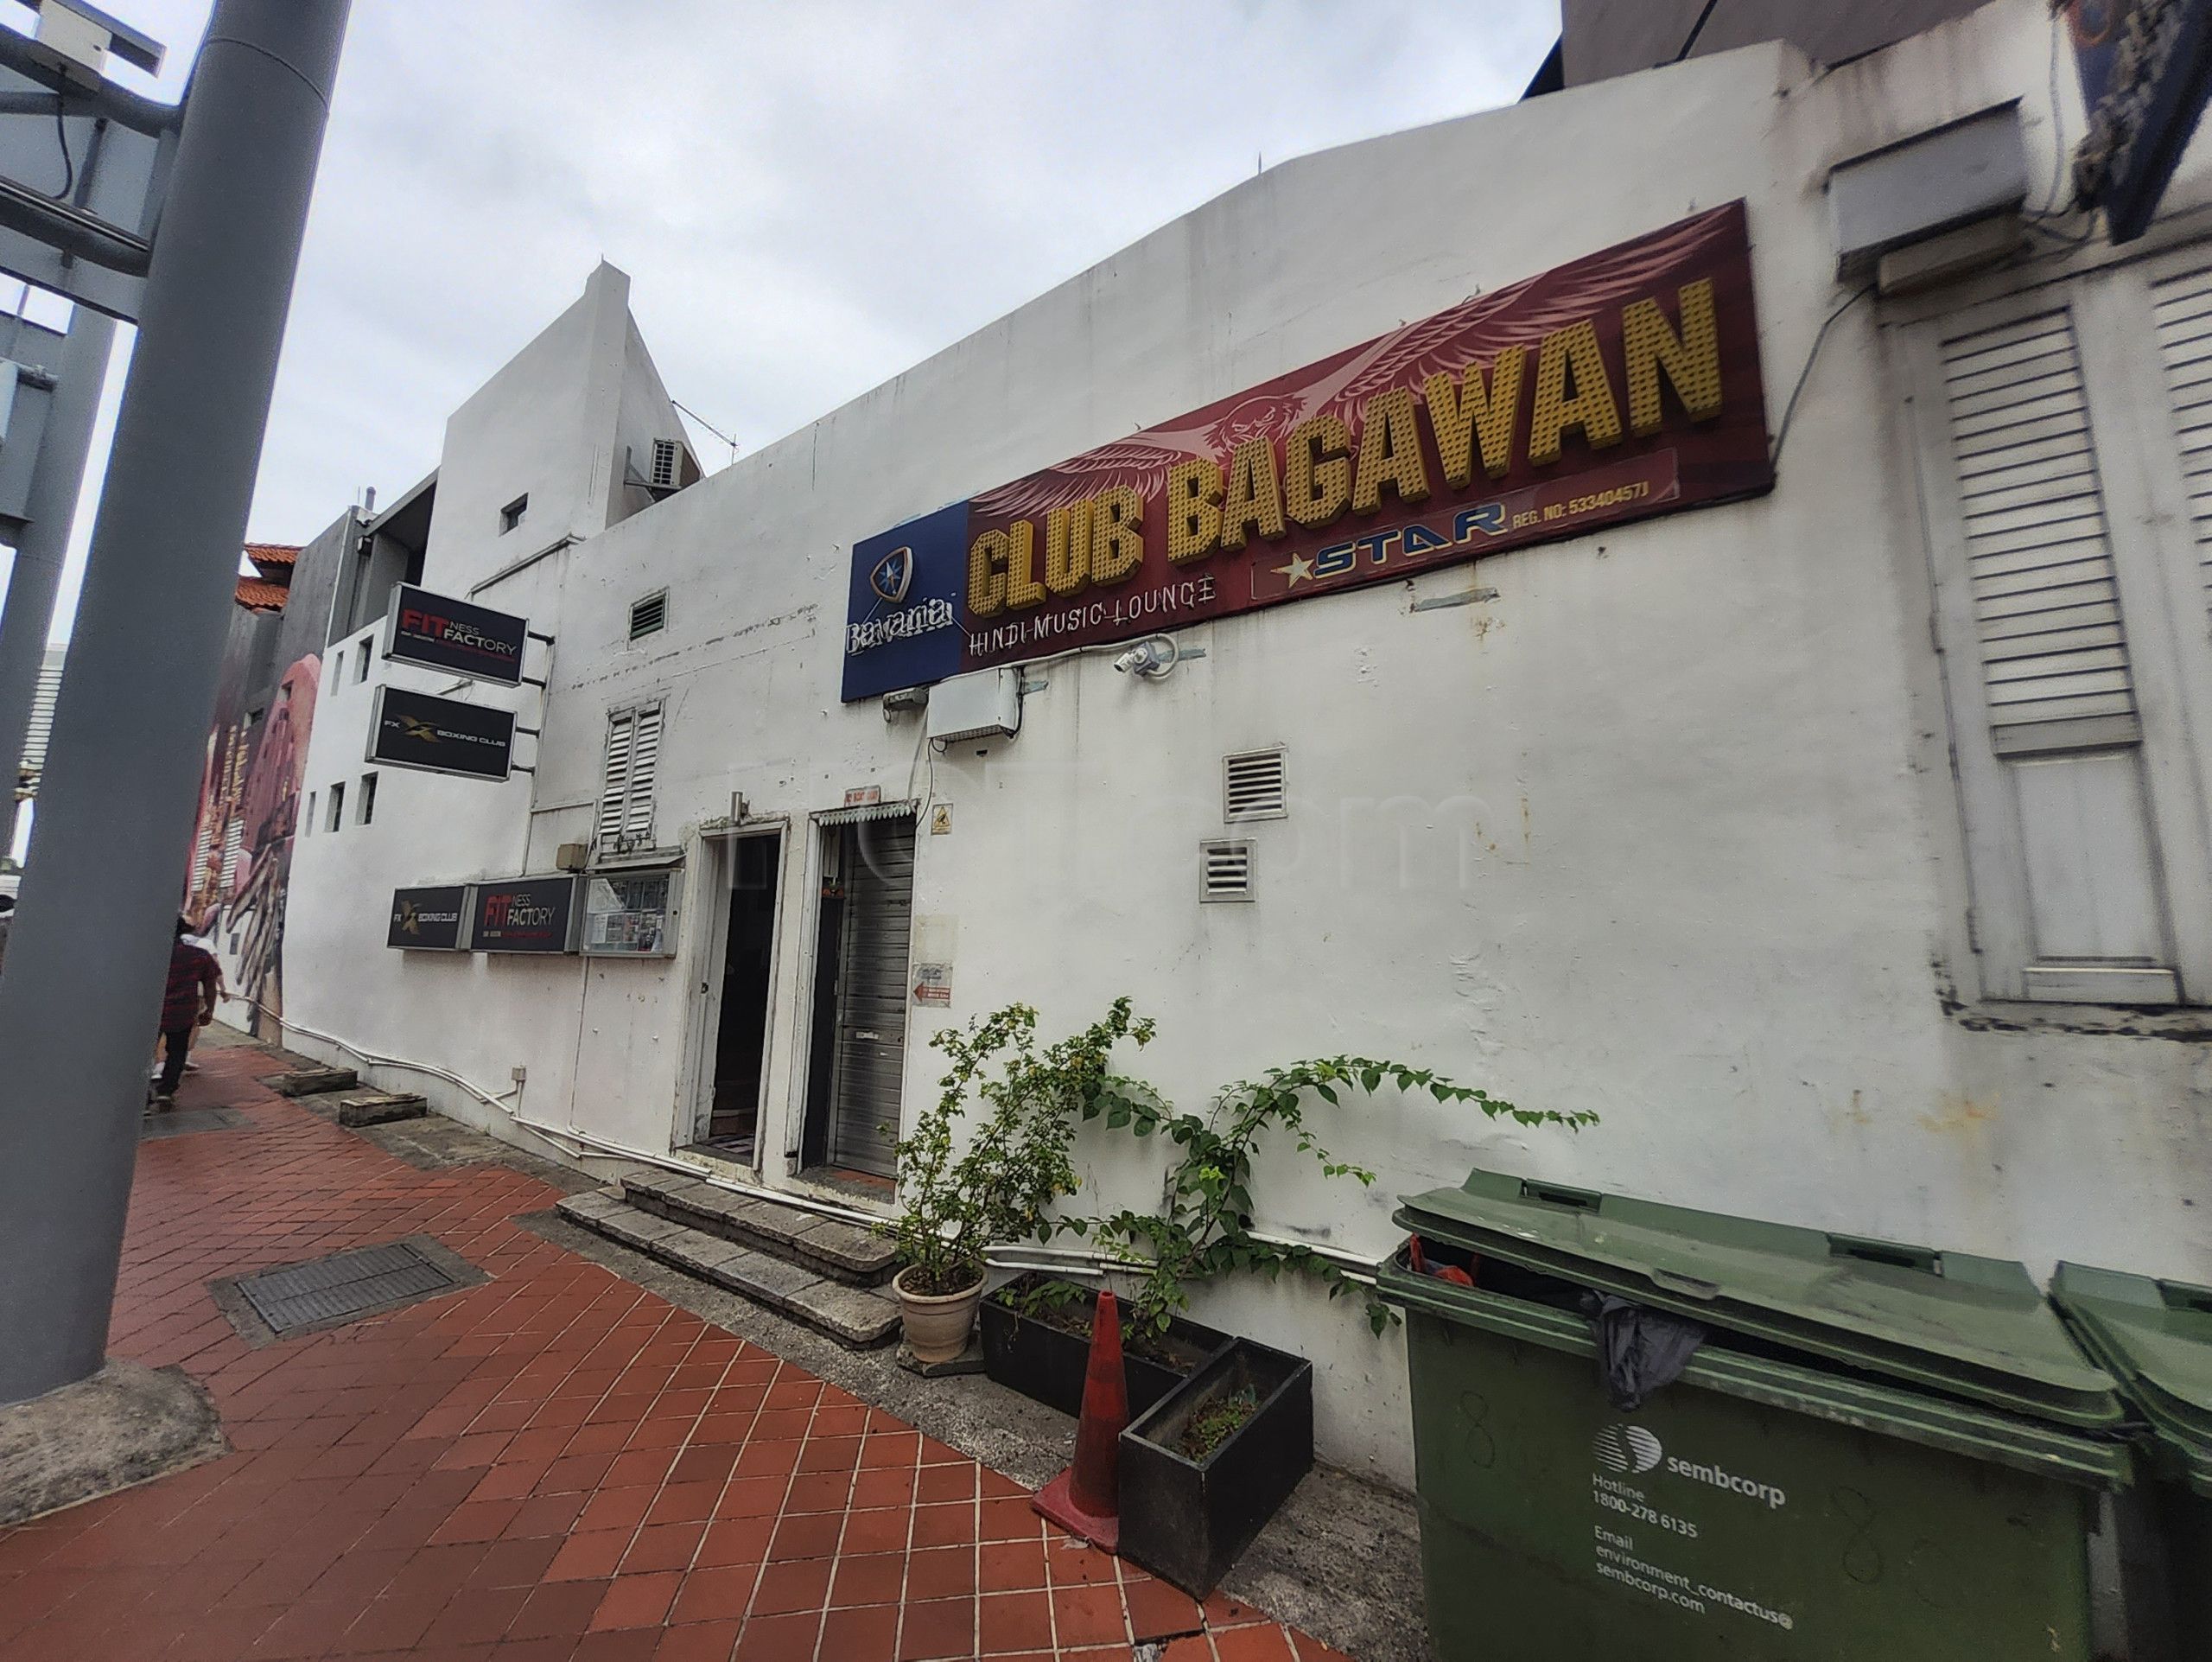 Singapore, Singapore Club Bagawan